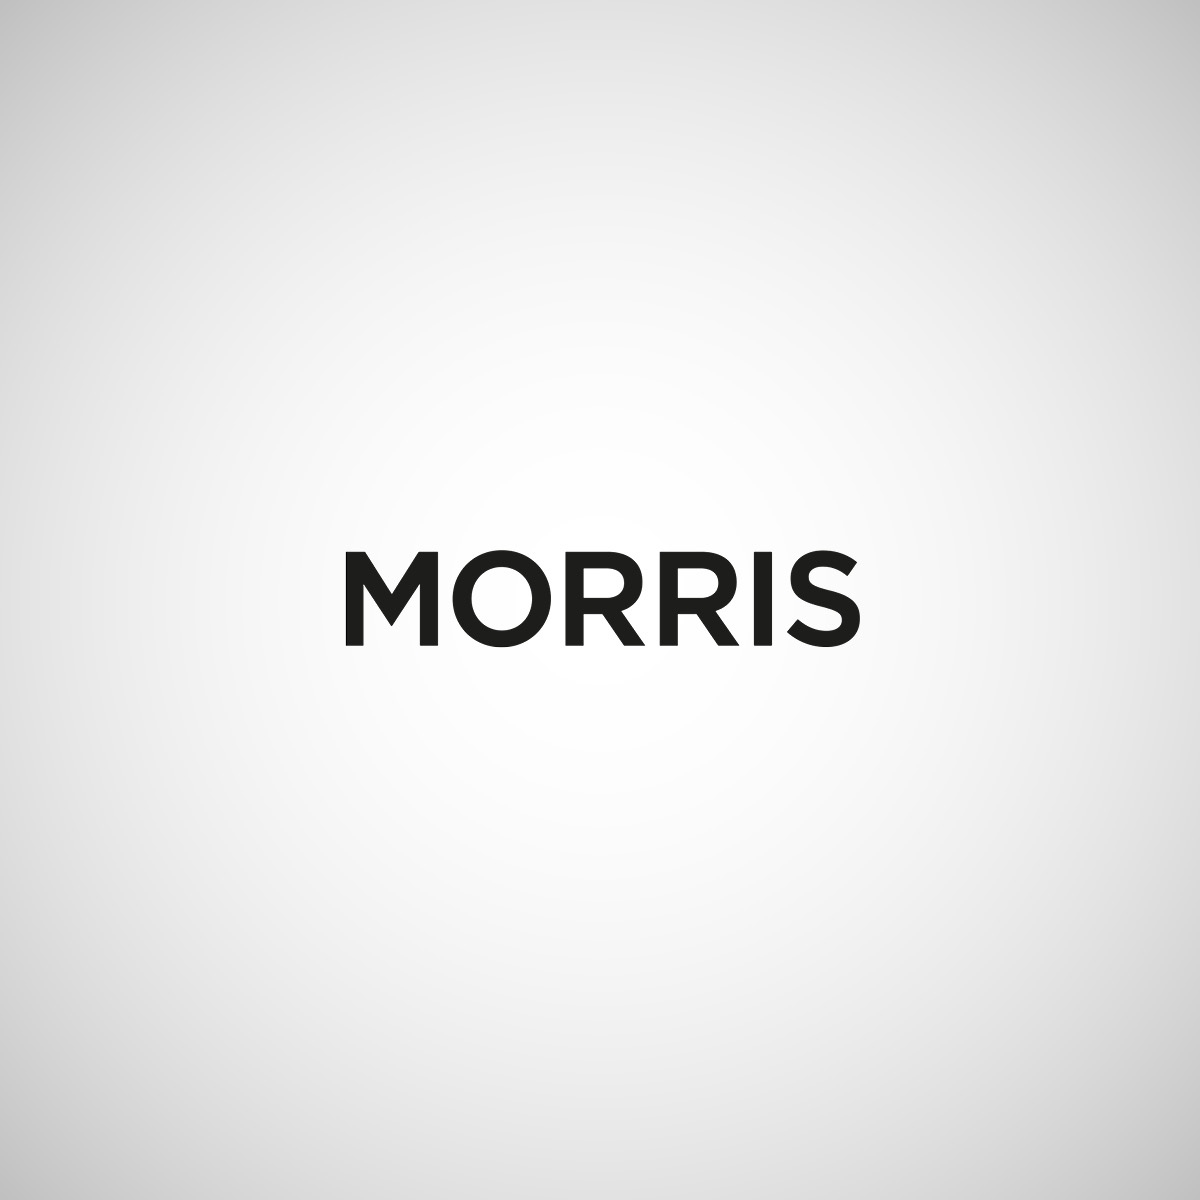 Morris_1200x1200.jpg